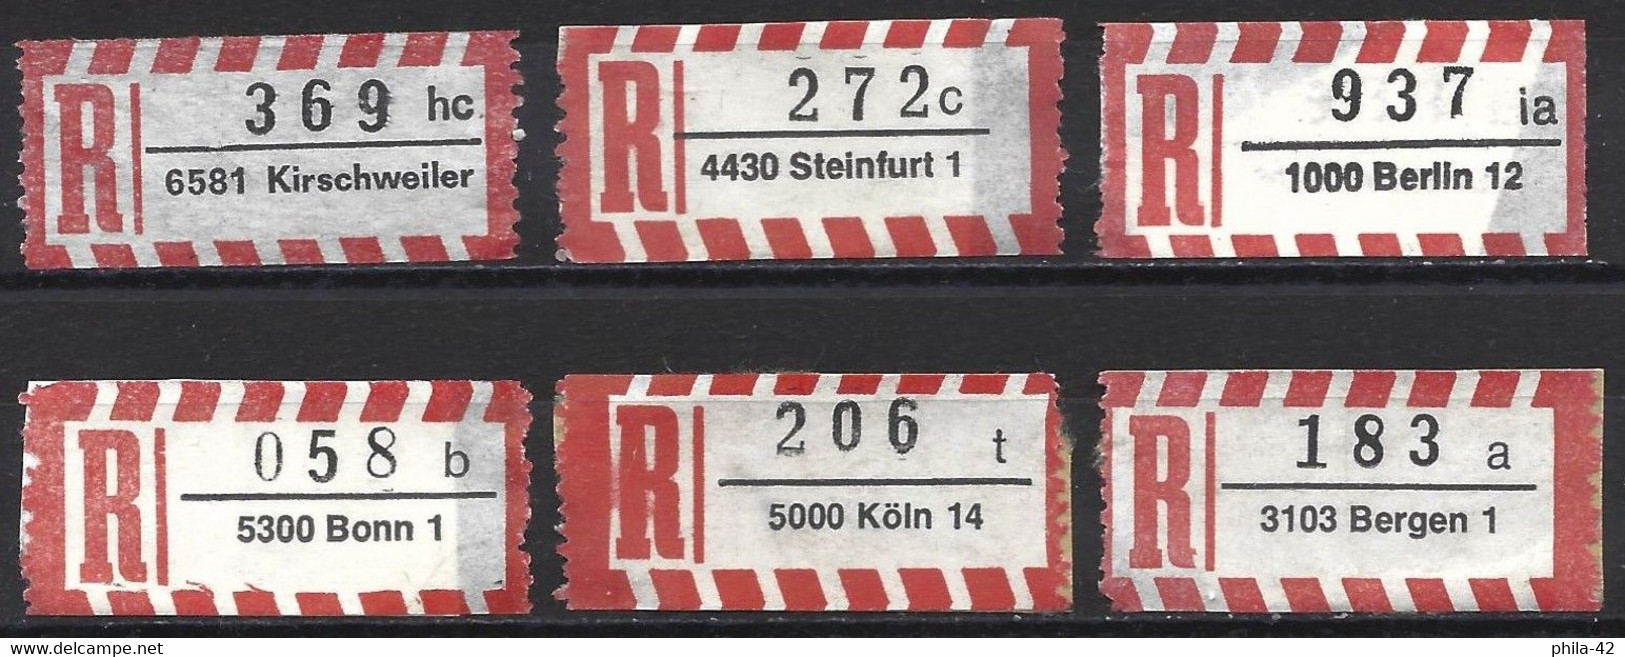 Germany FRG - Labels Registered Letter - Set 6 Labels - R- & V- Vignetten